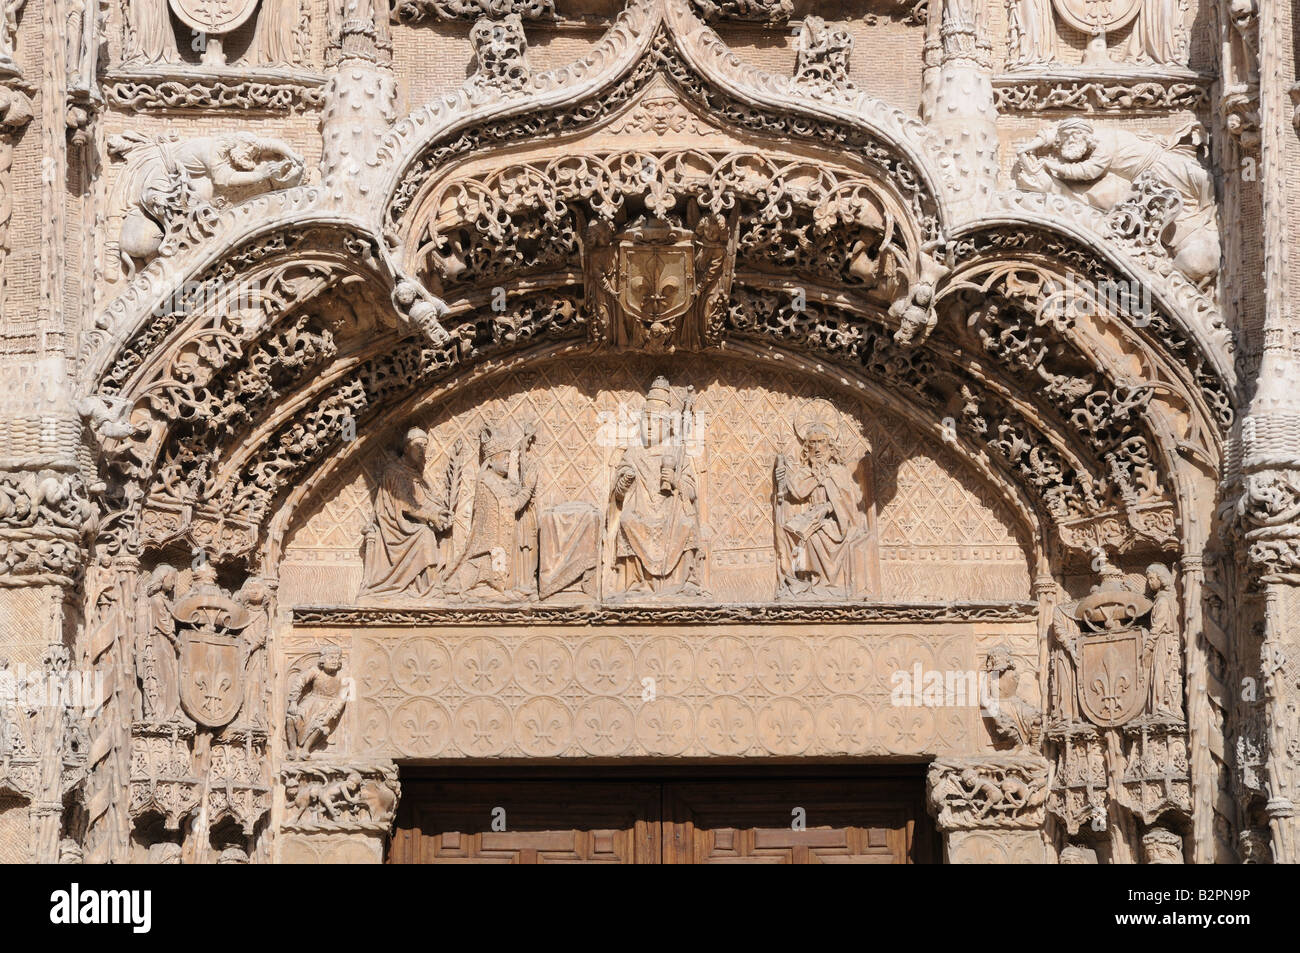 Belle sculpture sur pierre complexe protection thermique au-dessus de l'entrée de Colegio de San Gregorio Valladolid Espagne Banque D'Images